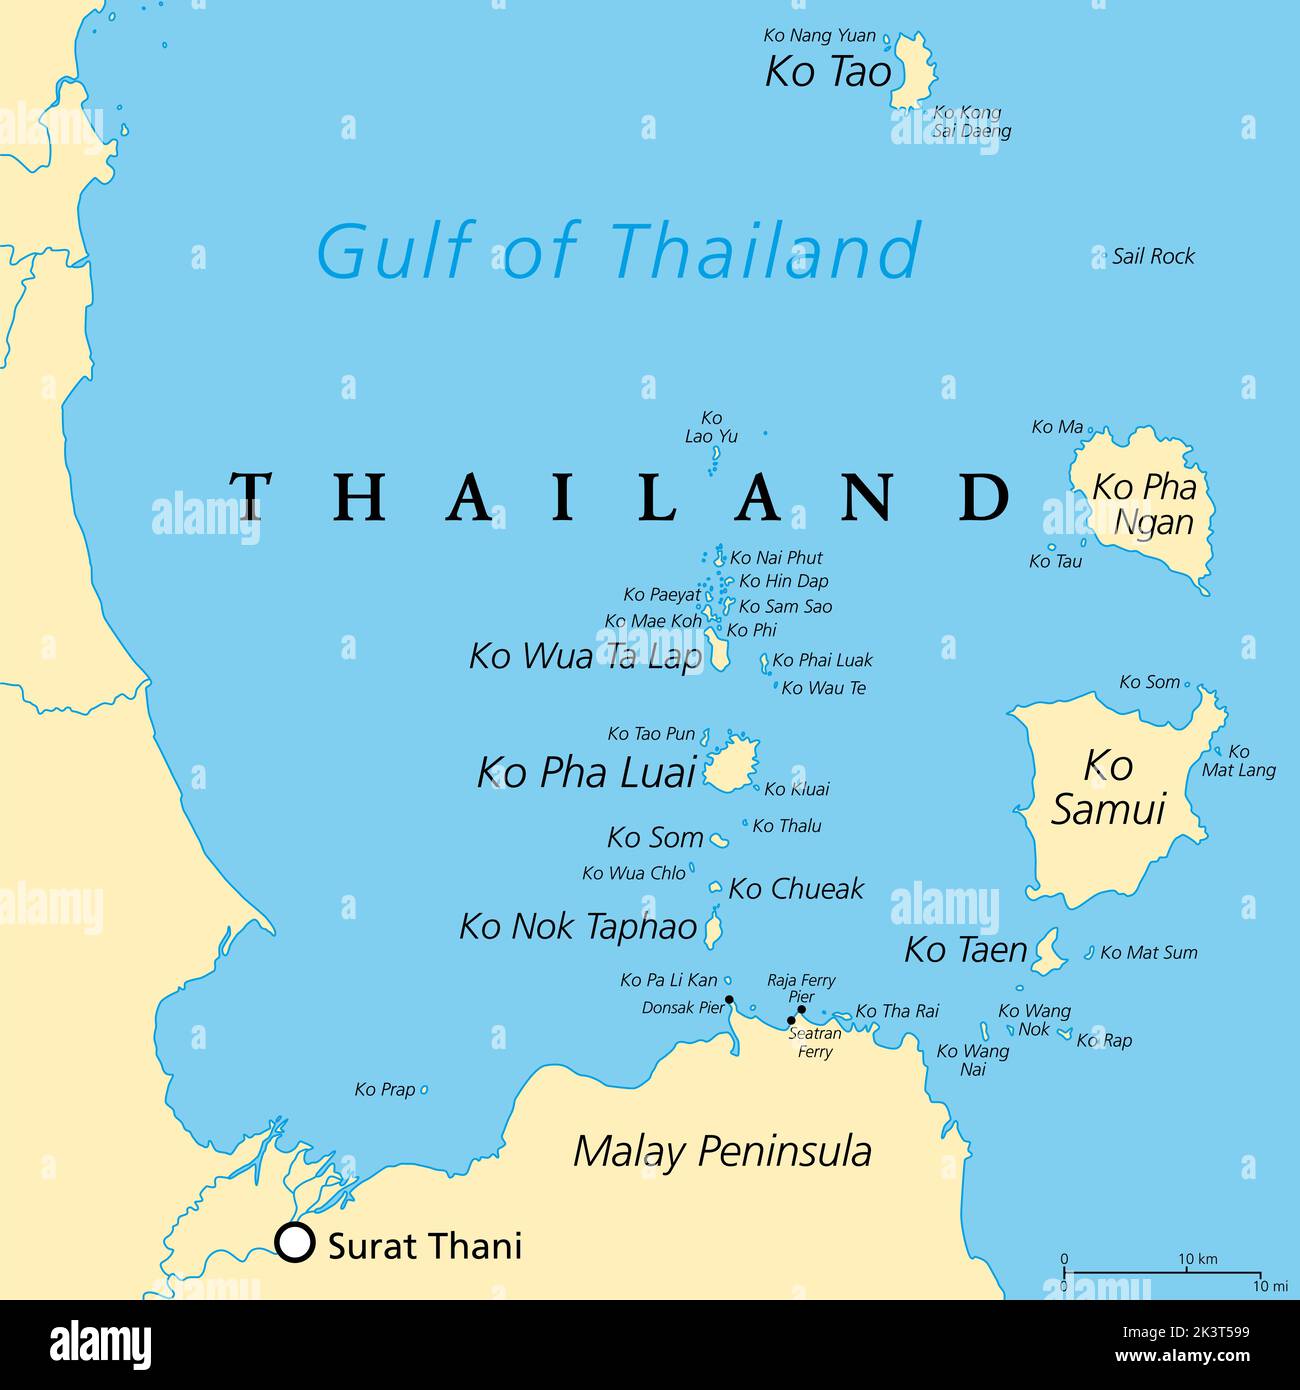 De Ko Samui a Ko Tao, mapa político. Destinos turísticos y turísticos populares con numerosas islas de la costa de Tailandia. Foto de stock